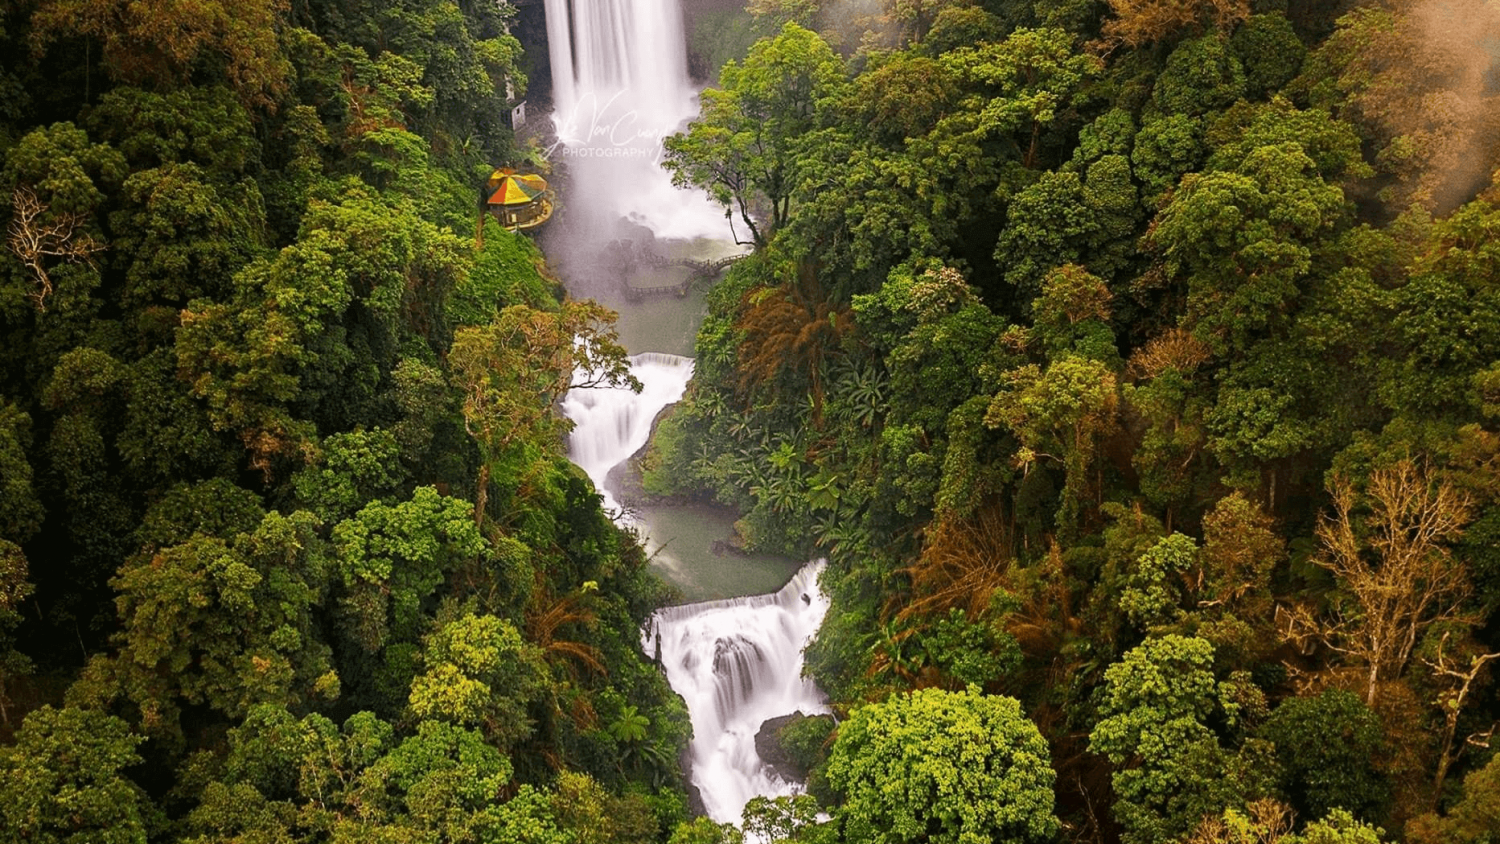 Trải nghiệm khu du lịch thác Đamb'ri - 1 trong 7 thác nước đẹp nhất thế giới tại Việt Nam